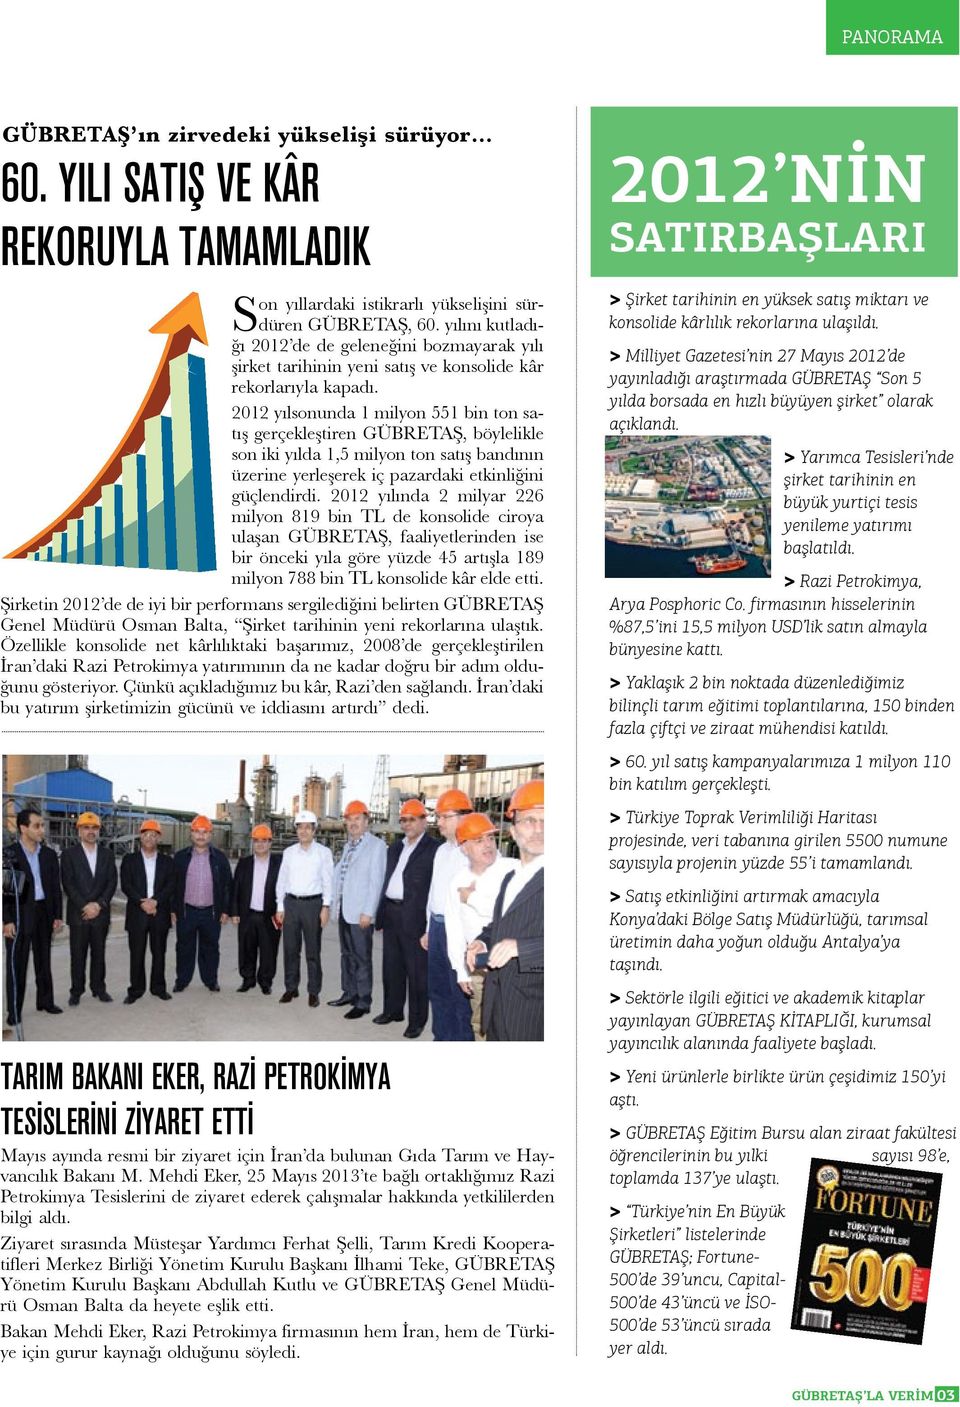 2012 yılsonunda 1 milyon 551 bin ton satış gerçekleştiren GÜBRETAŞ, böylelikle son iki yılda 1,5 milyon ton satış bandının üzerine yerleşerek iç pazardaki etkinliğini güçlendirdi.